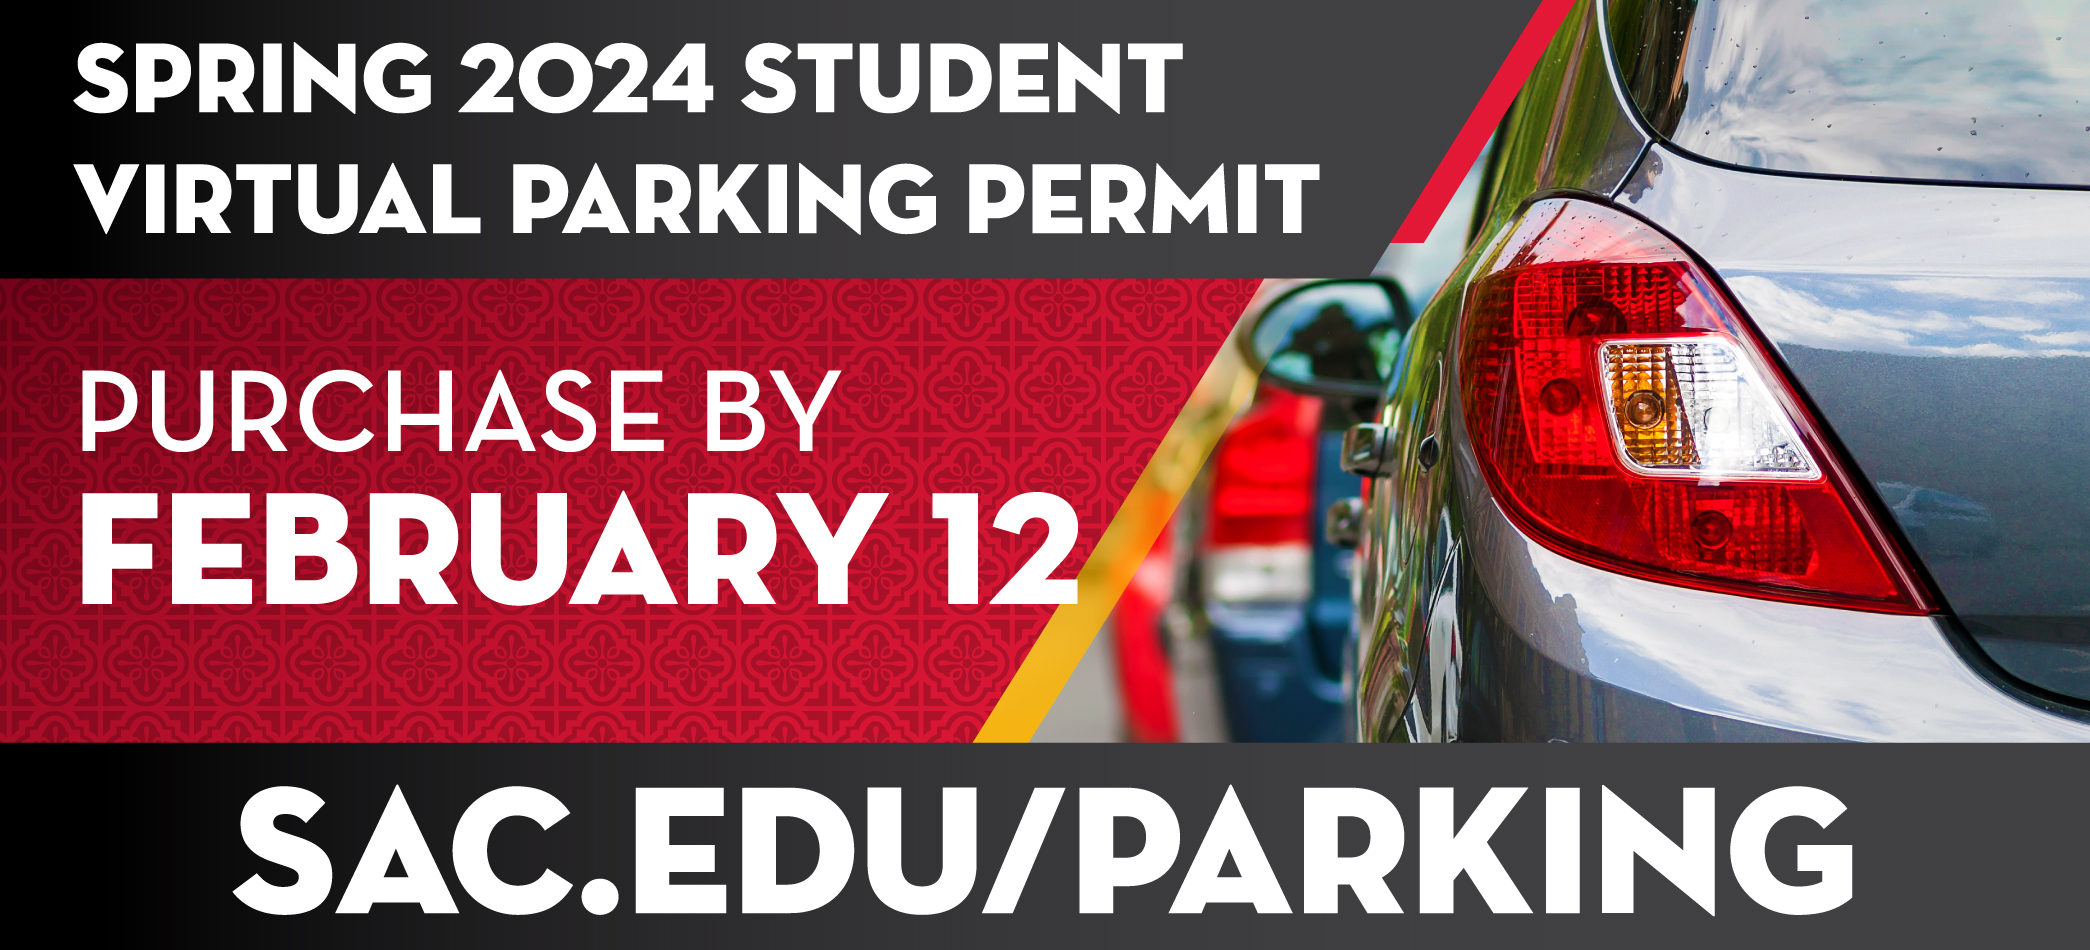 Parking Permit Spring 2024